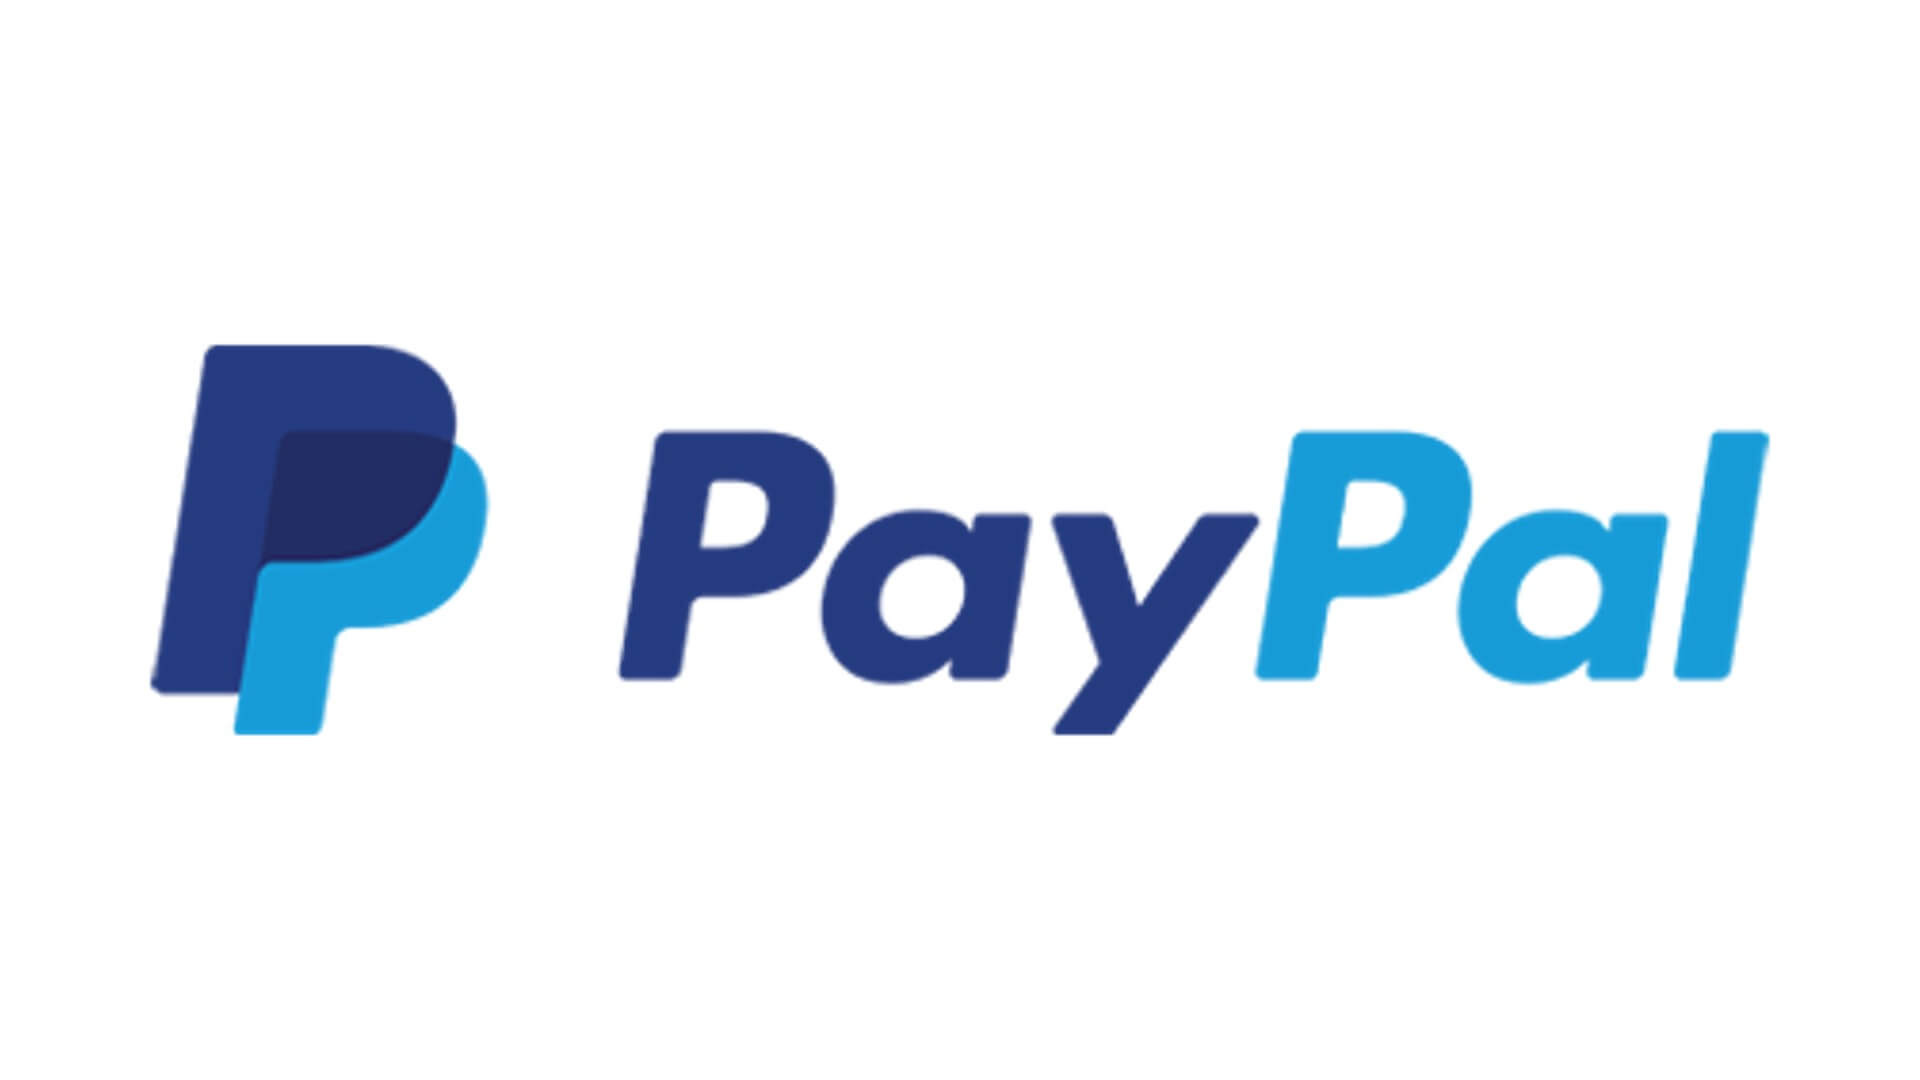 PayPal als Zahlungsart für Ihr Unternehmen - Set-up und Schnittstellen - Online, Offline und am Point of Sale Kopie